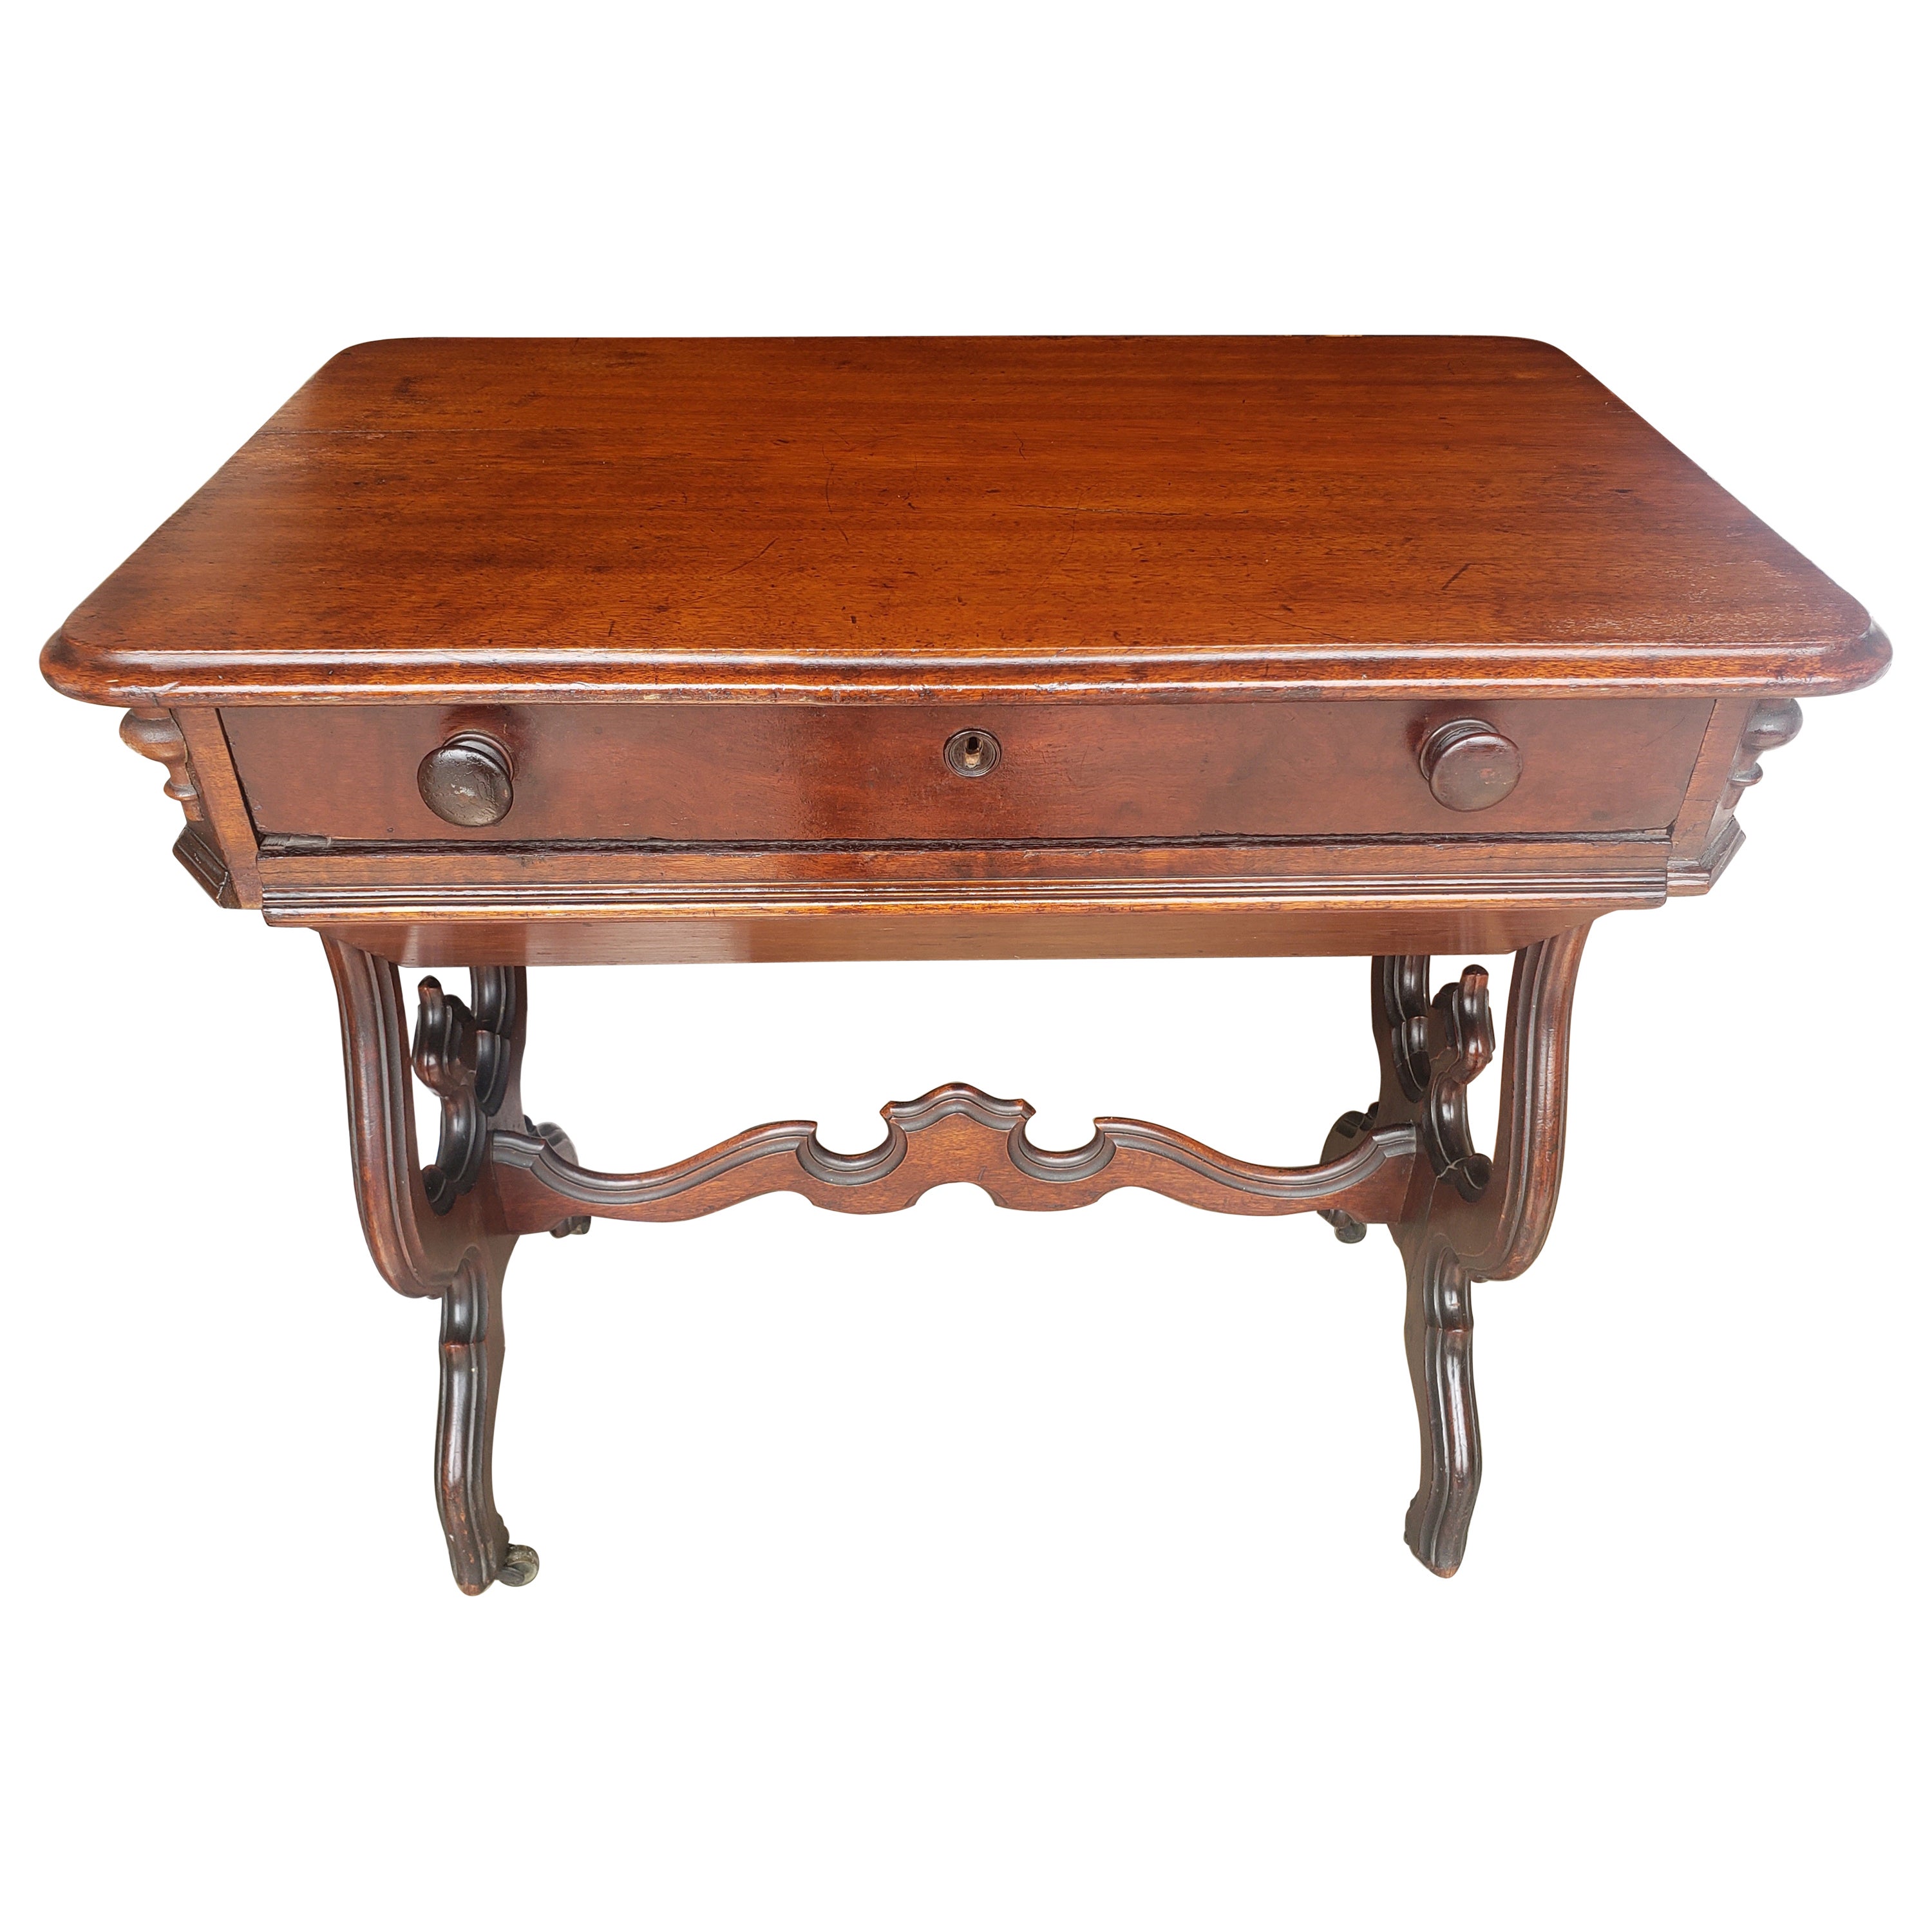 19. Jahrhundert viktorianischen Rokoko-Stil geschnitzt Mahagoni Rolling Sewing Tisch